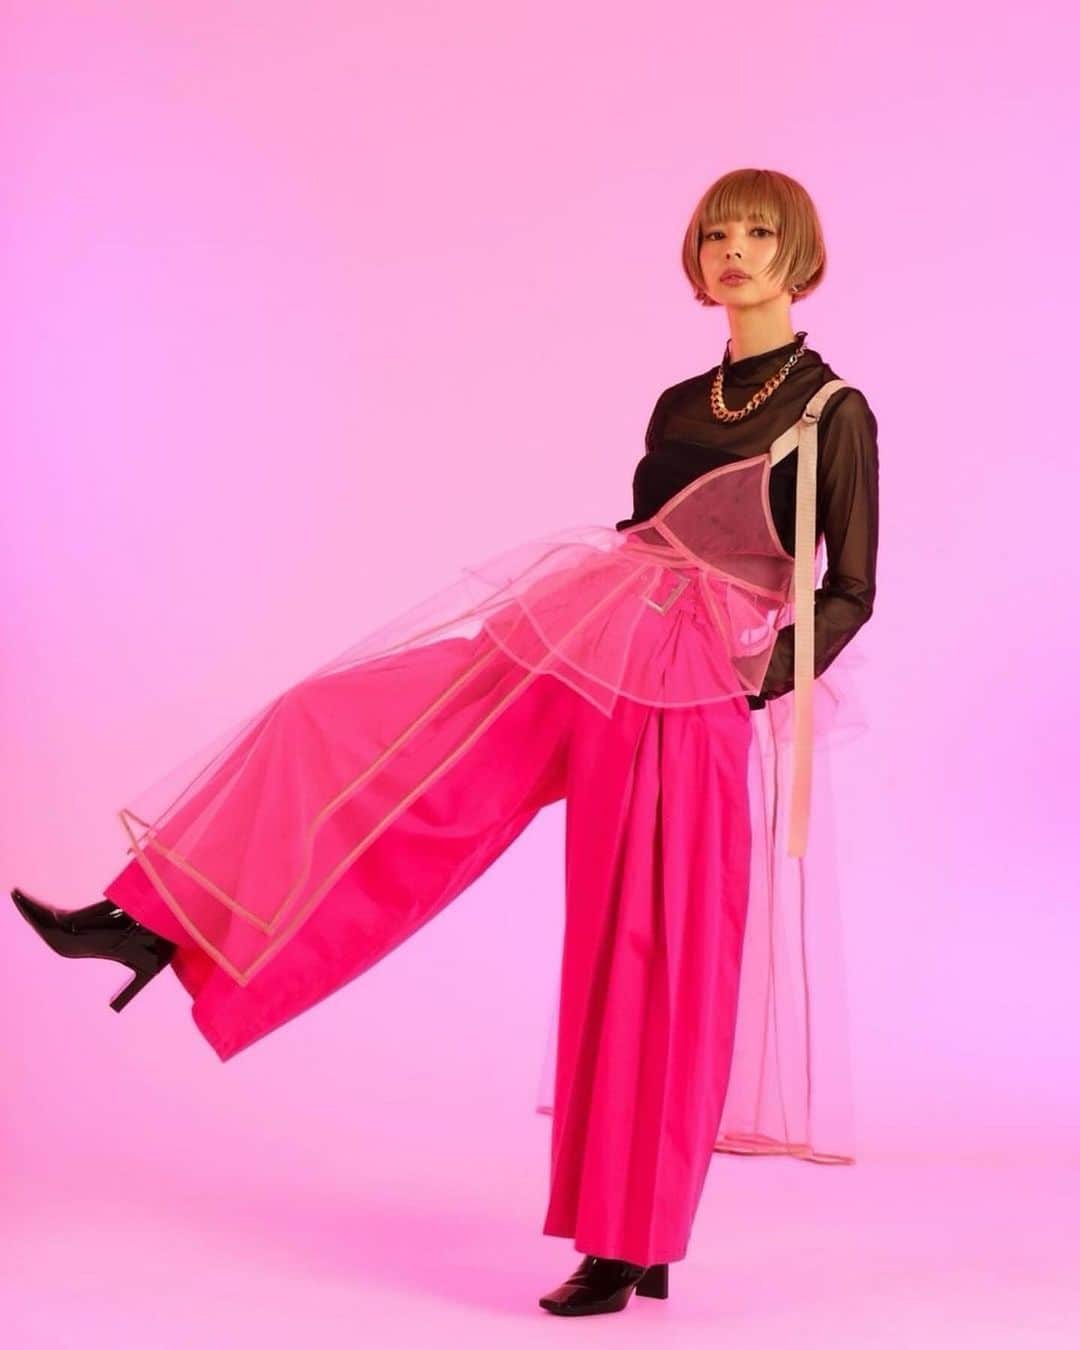 柏木作夢のインスタグラム：「【fusion magazine】 My styling work for Moga Mogami🚀 The 'PINK'  @mogatanpe   #サムズポイント #最上もが #MOGA #fusion #fusionmagazine  #fashion #fashionshooting #cover #pink #fashionstyle  #スタイリスト #samukashiwagi #柏木作夢  🇺🇸🇺🇸🇺🇸🇺🇸🇺🇸🇺🇸🇺🇸🇺🇸🇺🇸  Photo by  jerrycoria   And fusion magazine @fusiontvnetworks   #Repost @fusiontvnetworks ・・・ LAで発売されている雑誌『fusion』 日本でもwebサイトから買えるようになりました！  通常版と限定版の２冊、表紙になってます。 よろしくねえ！  衣装は  @samukashiwagi  メイクは @yumikasawanishi  Photo by jerrycoria  Moga Mogami exclusive magazine is now on sale you can purchase it on fusion website   We hope you enjoy the our special magazine issue   最上もが 11月号  https://fusiontvmedia.com/product/moga-mogami/  Limited edition Magazine   https://fusiontvmedia.com/product/moga-limited-edition/」